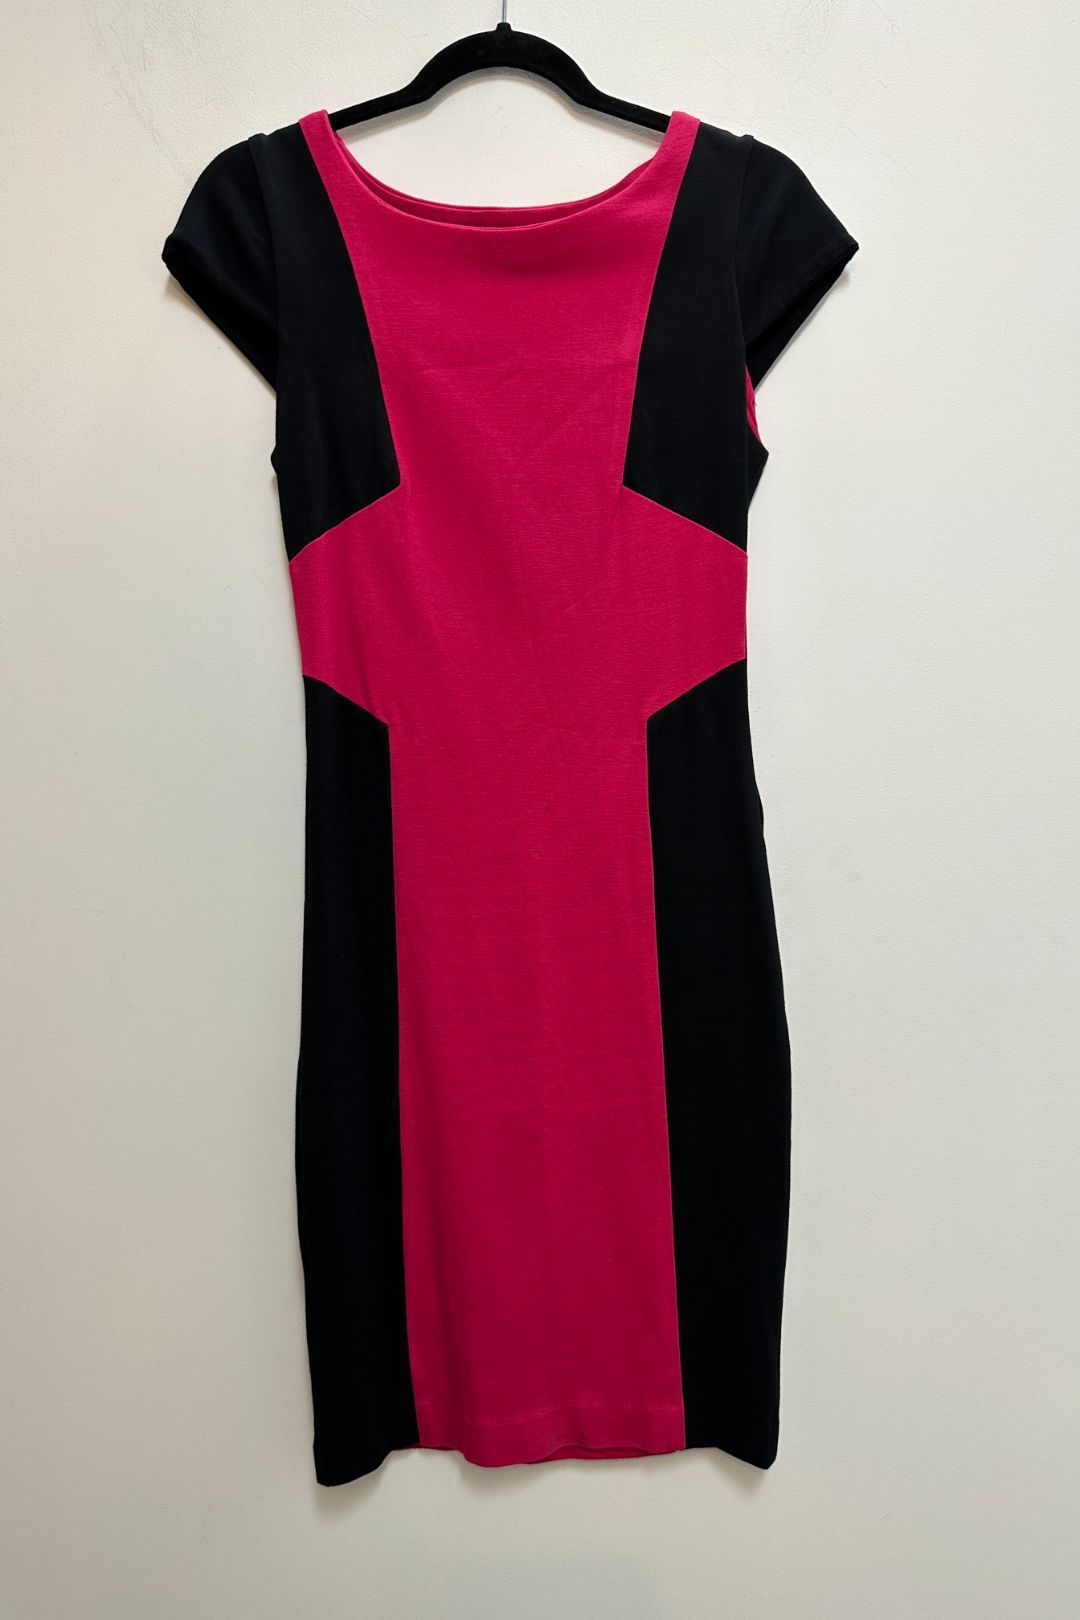 Metalicus Pink And Black Colourblock Dress